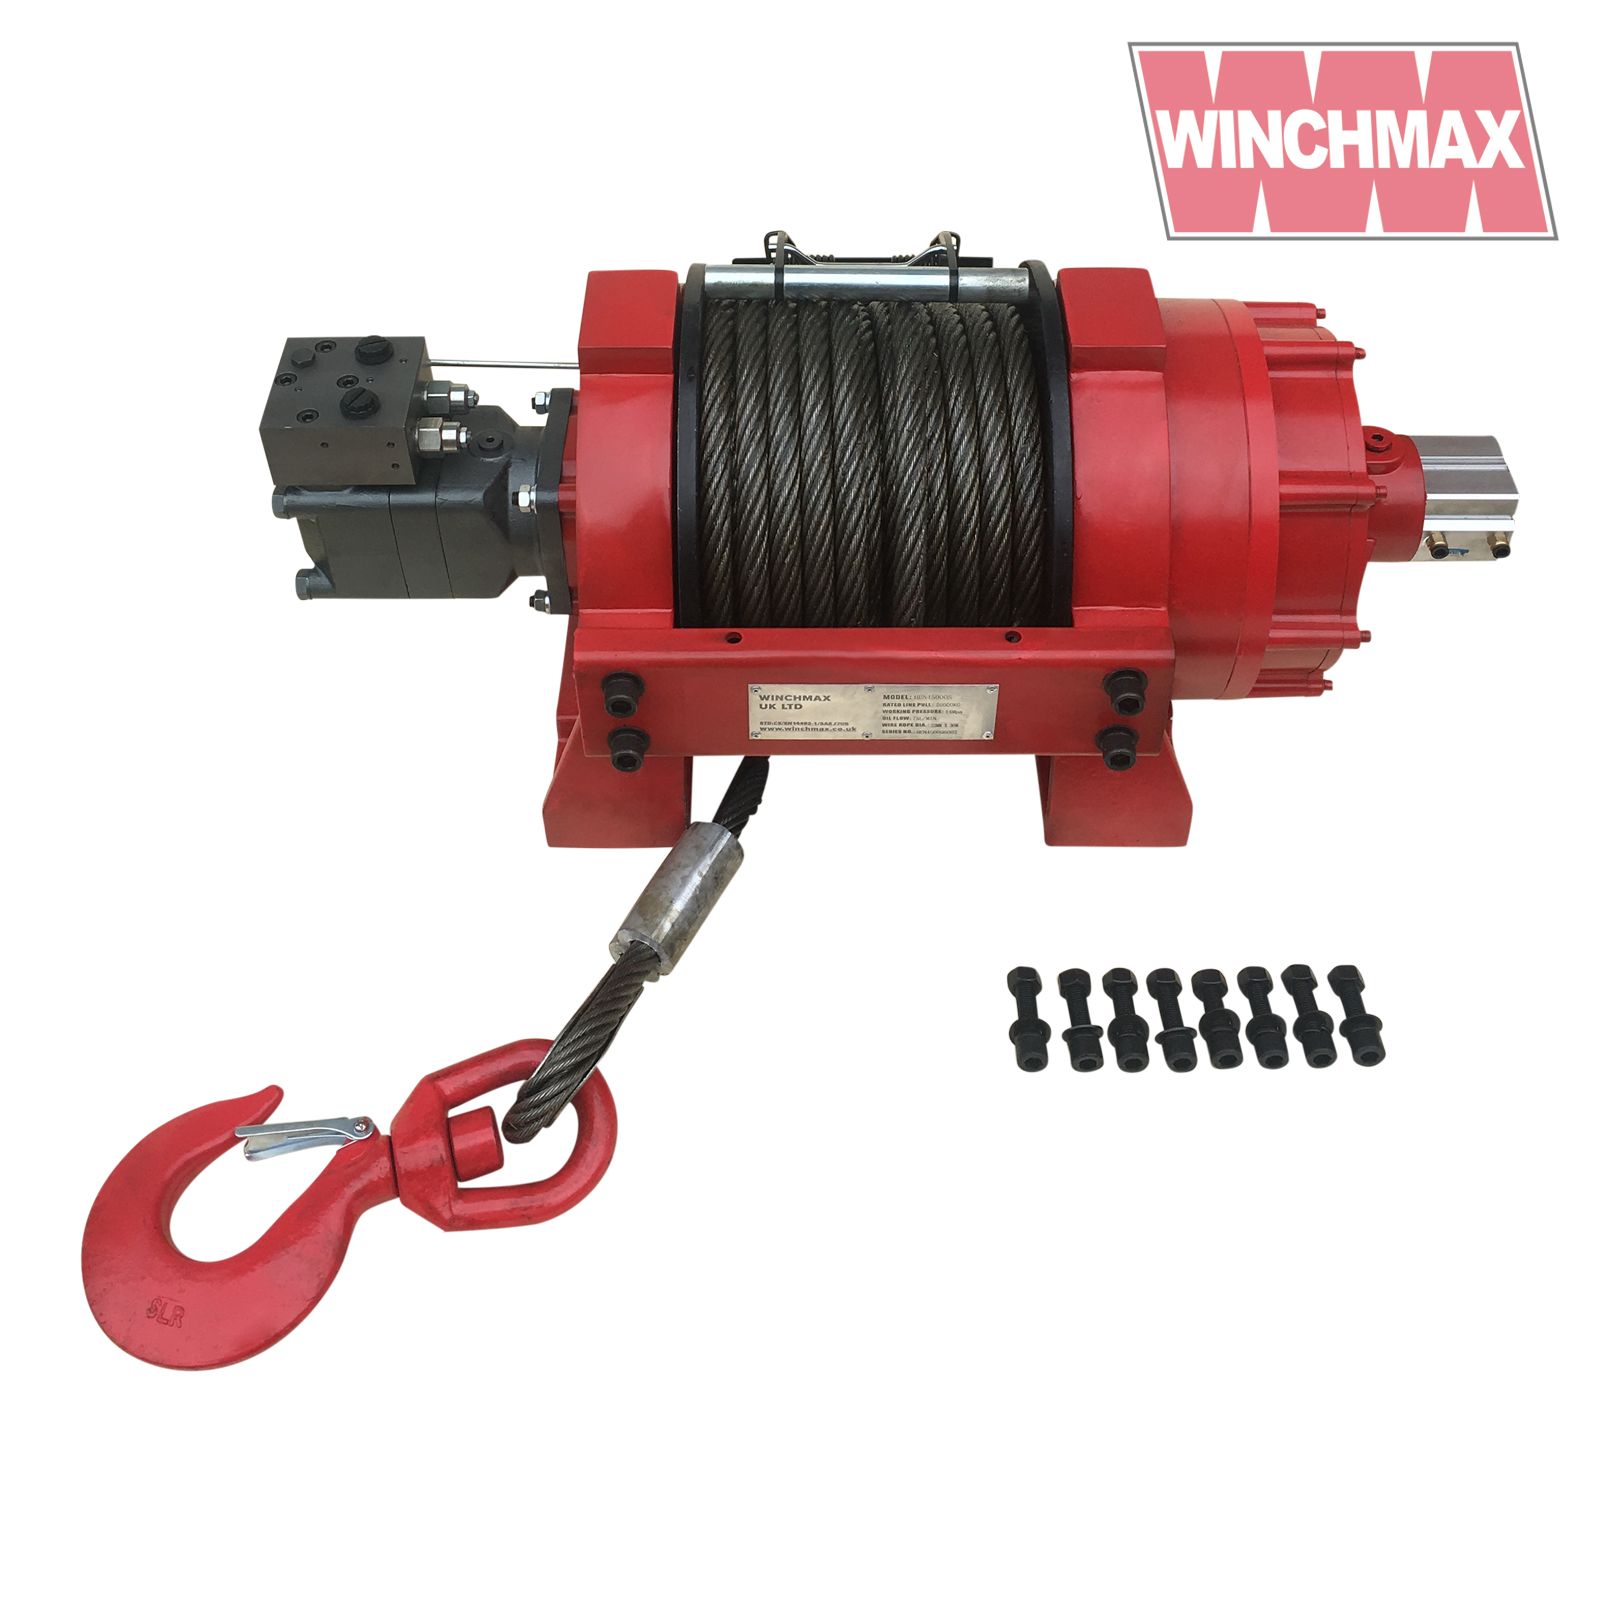 Winchmax 45000lb Hydraulic Recovery Winch